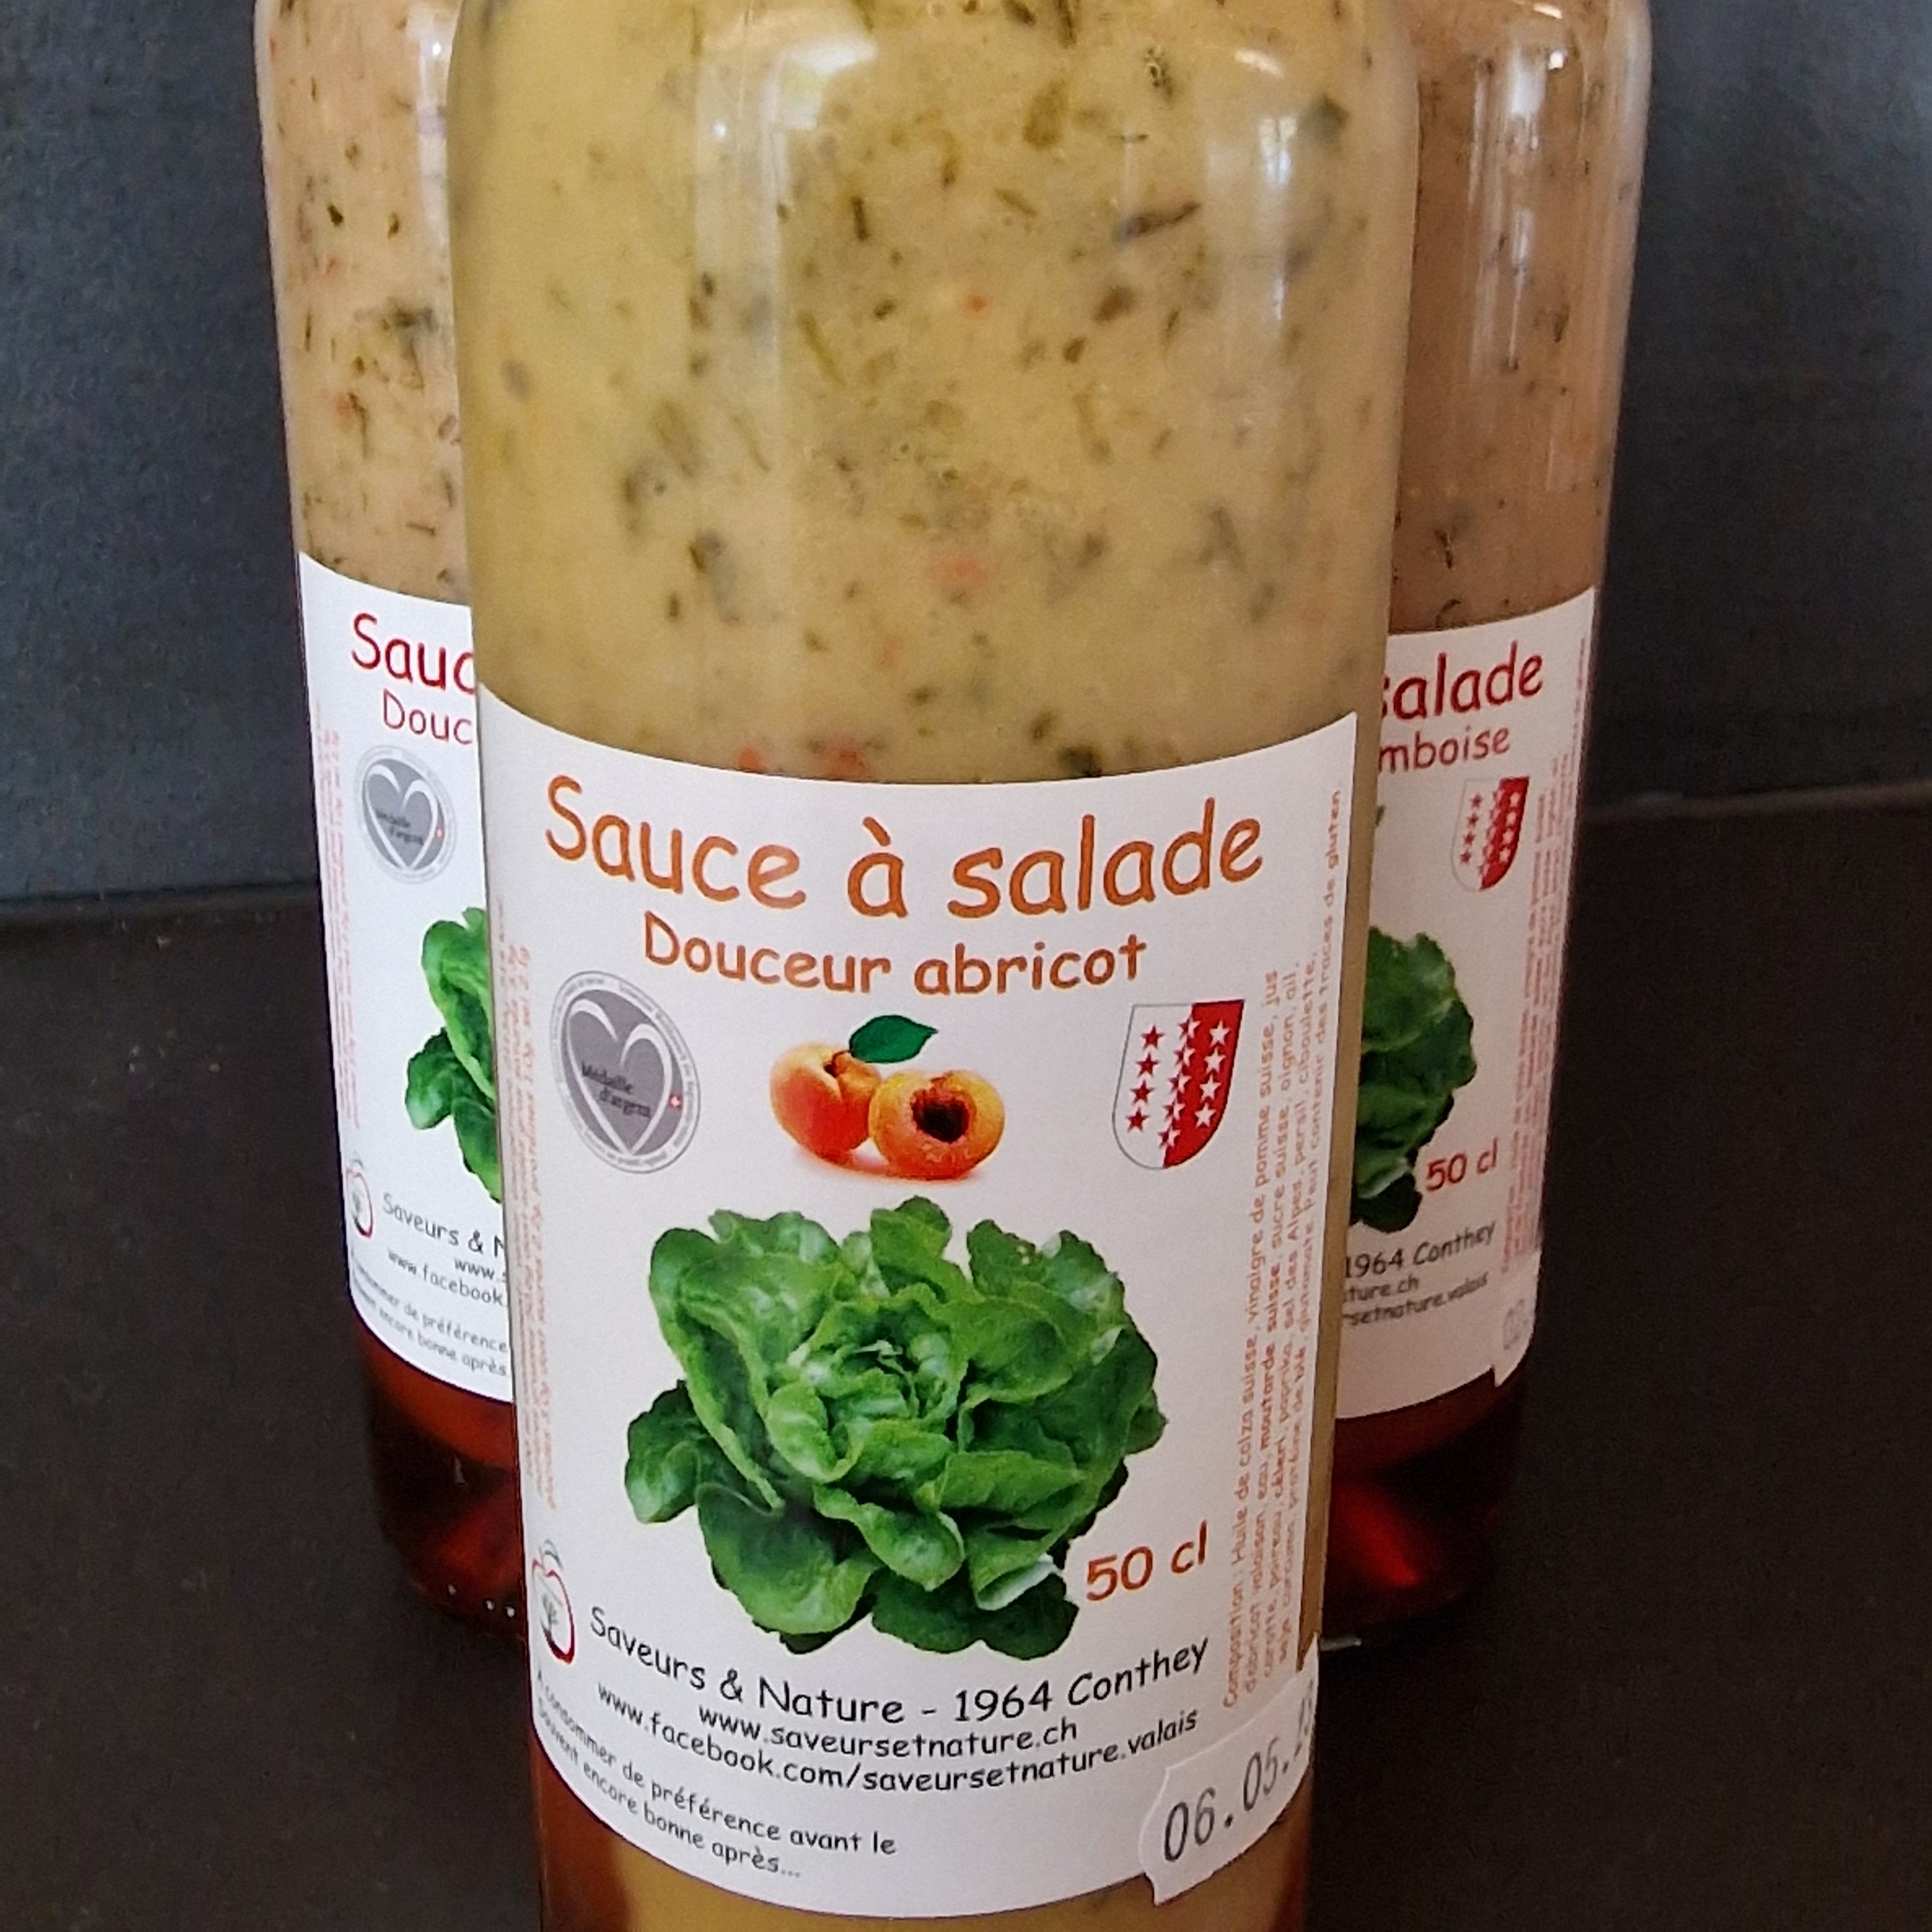 Sauces salade